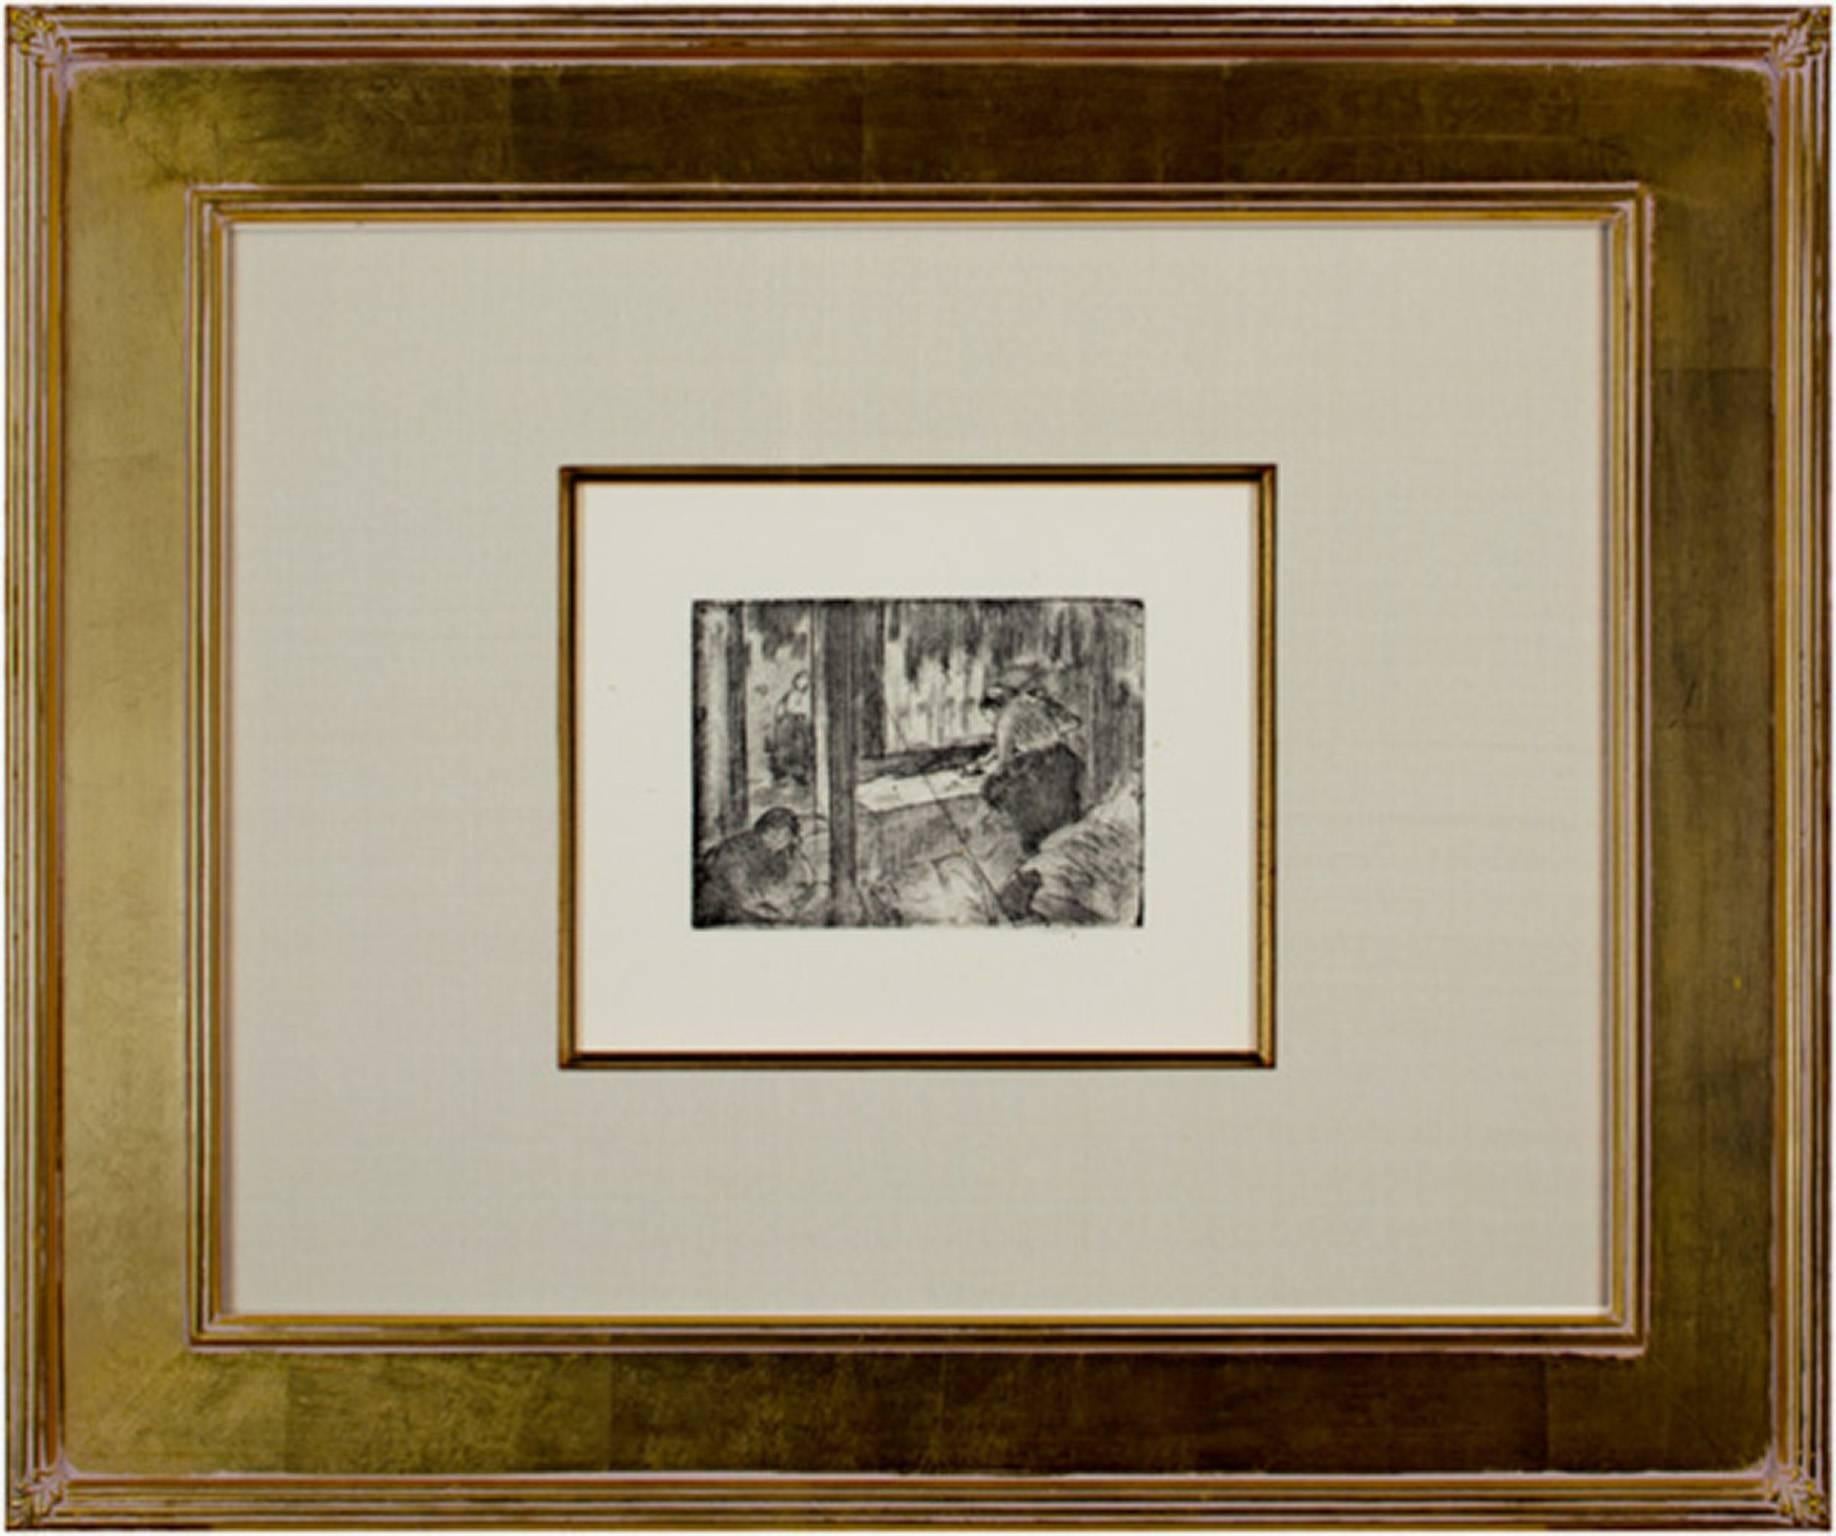 Les Blanchisseuses (Le Repassage)-The Laundresses - Print by Edgar Degas